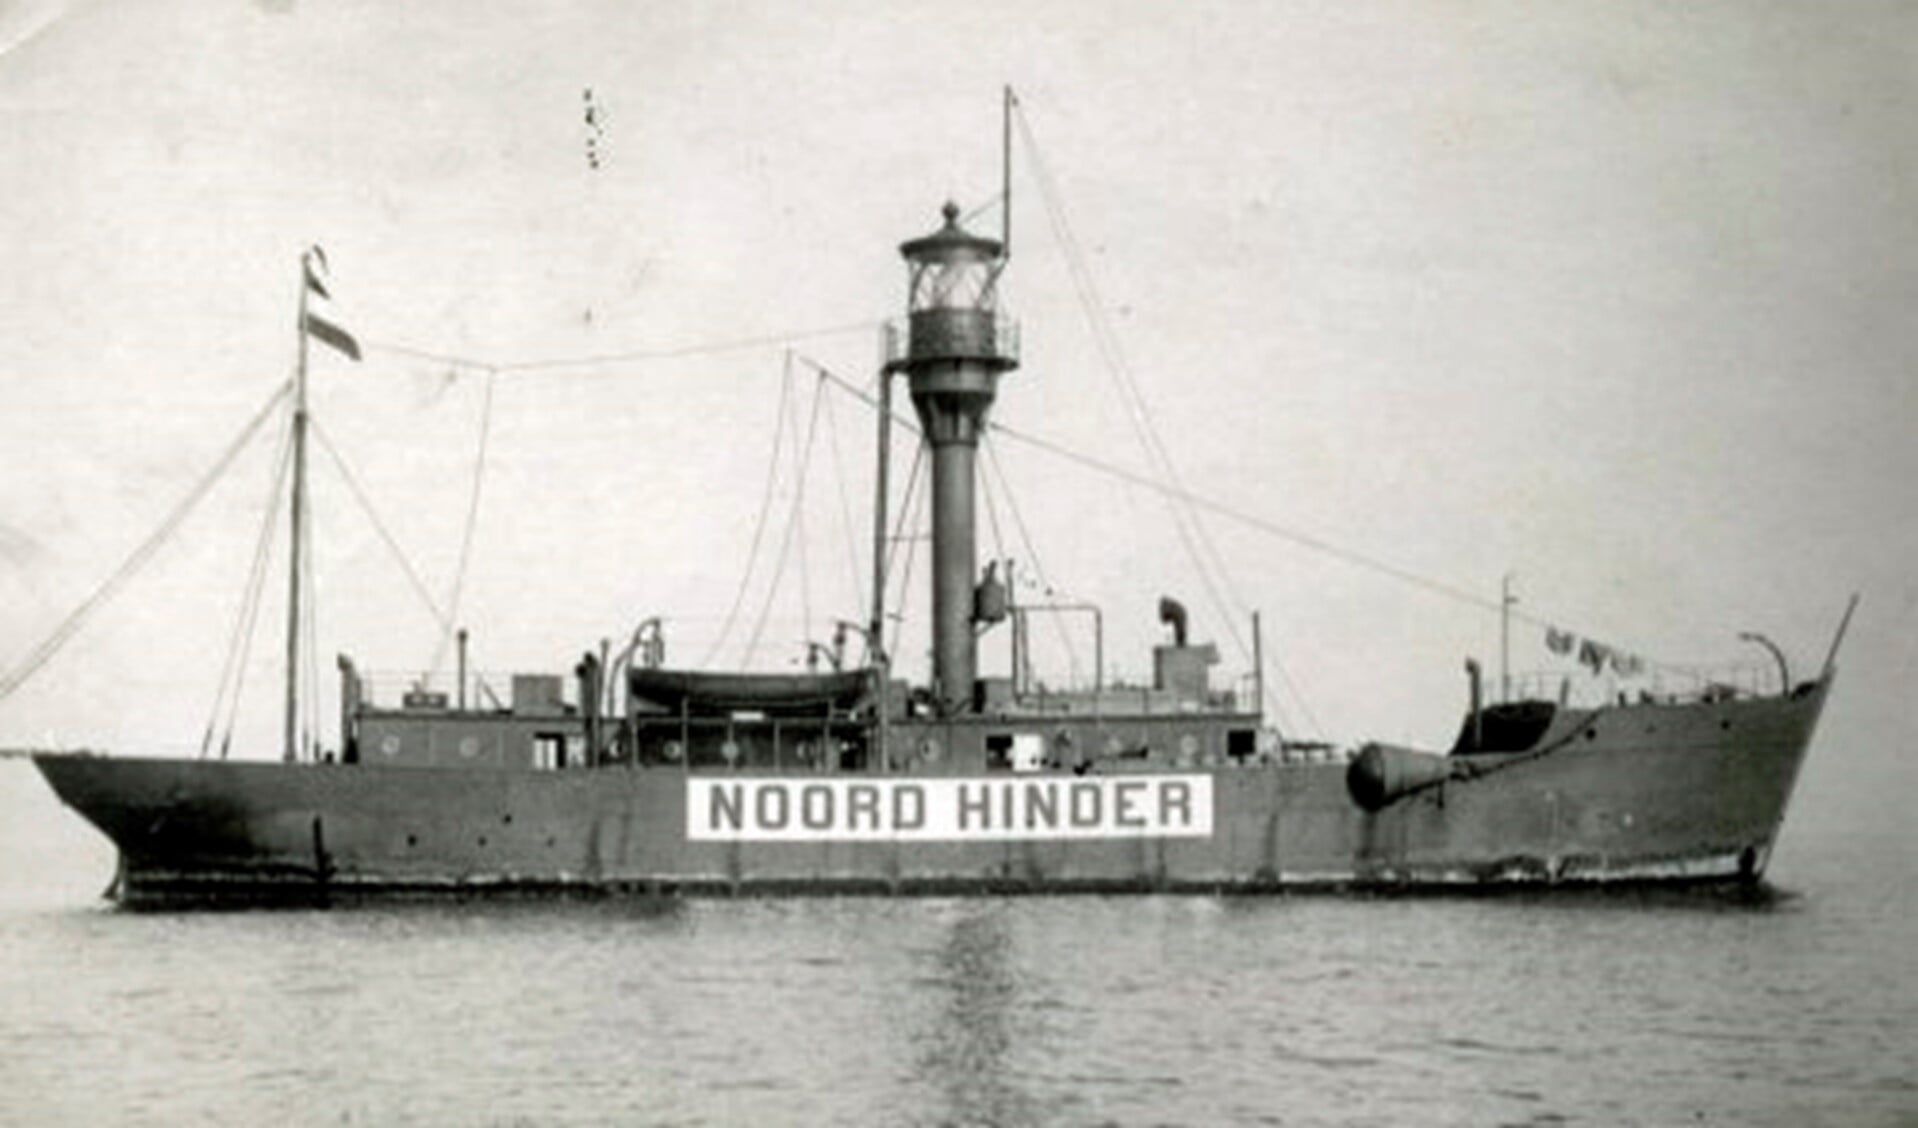 De Noord Hinder in 1912 